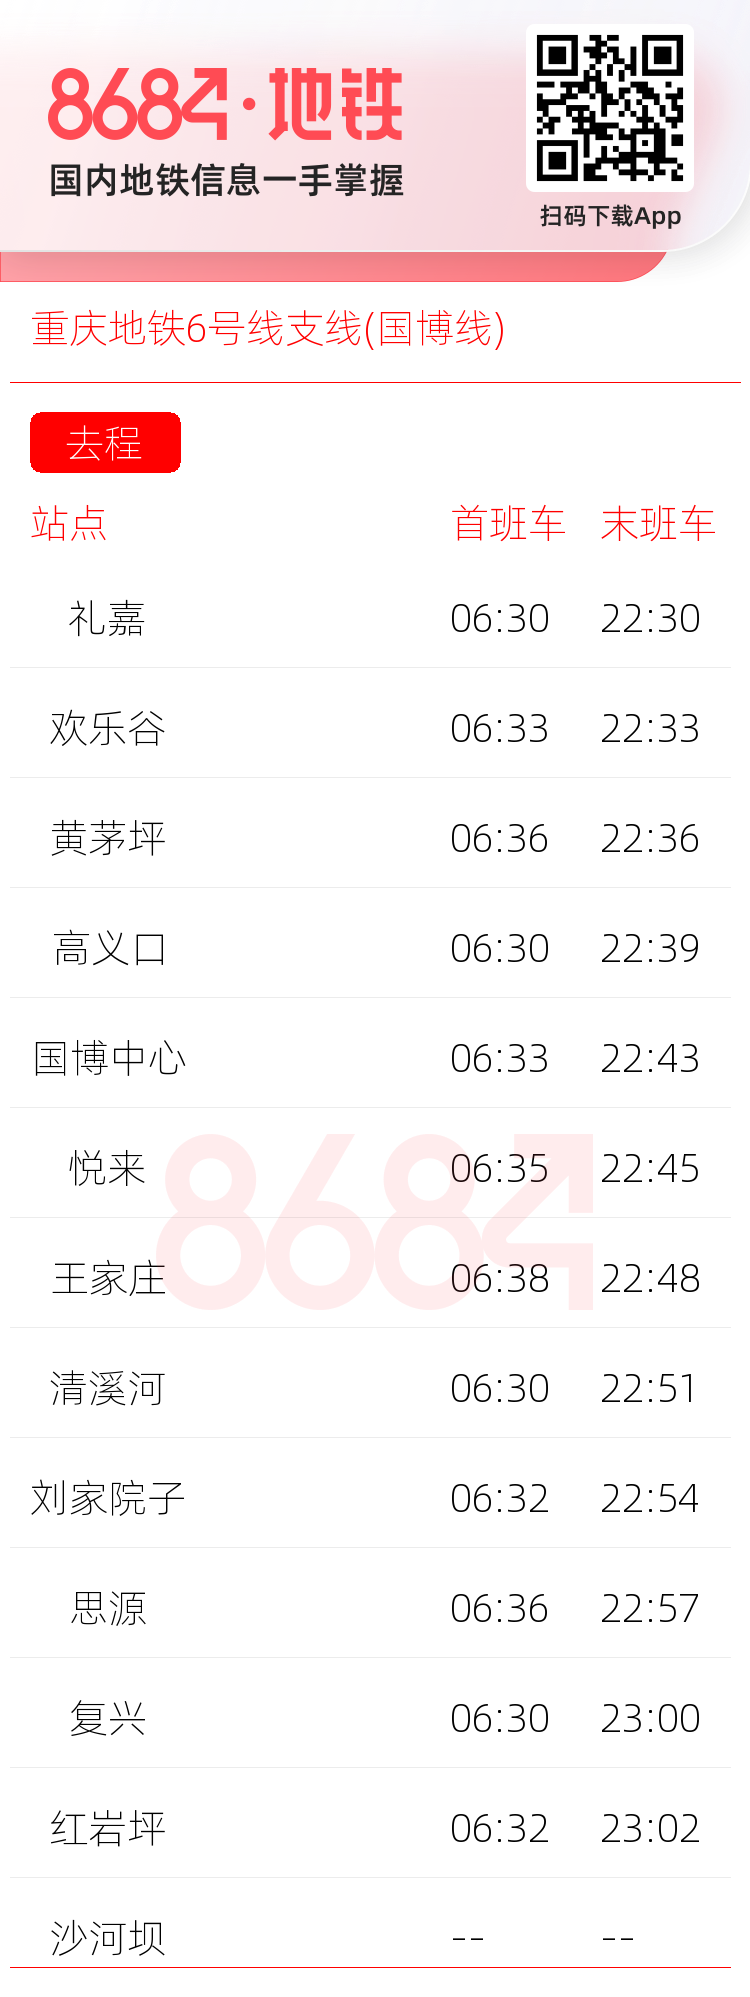 重庆地铁6号线支线(国博线)运营时间表